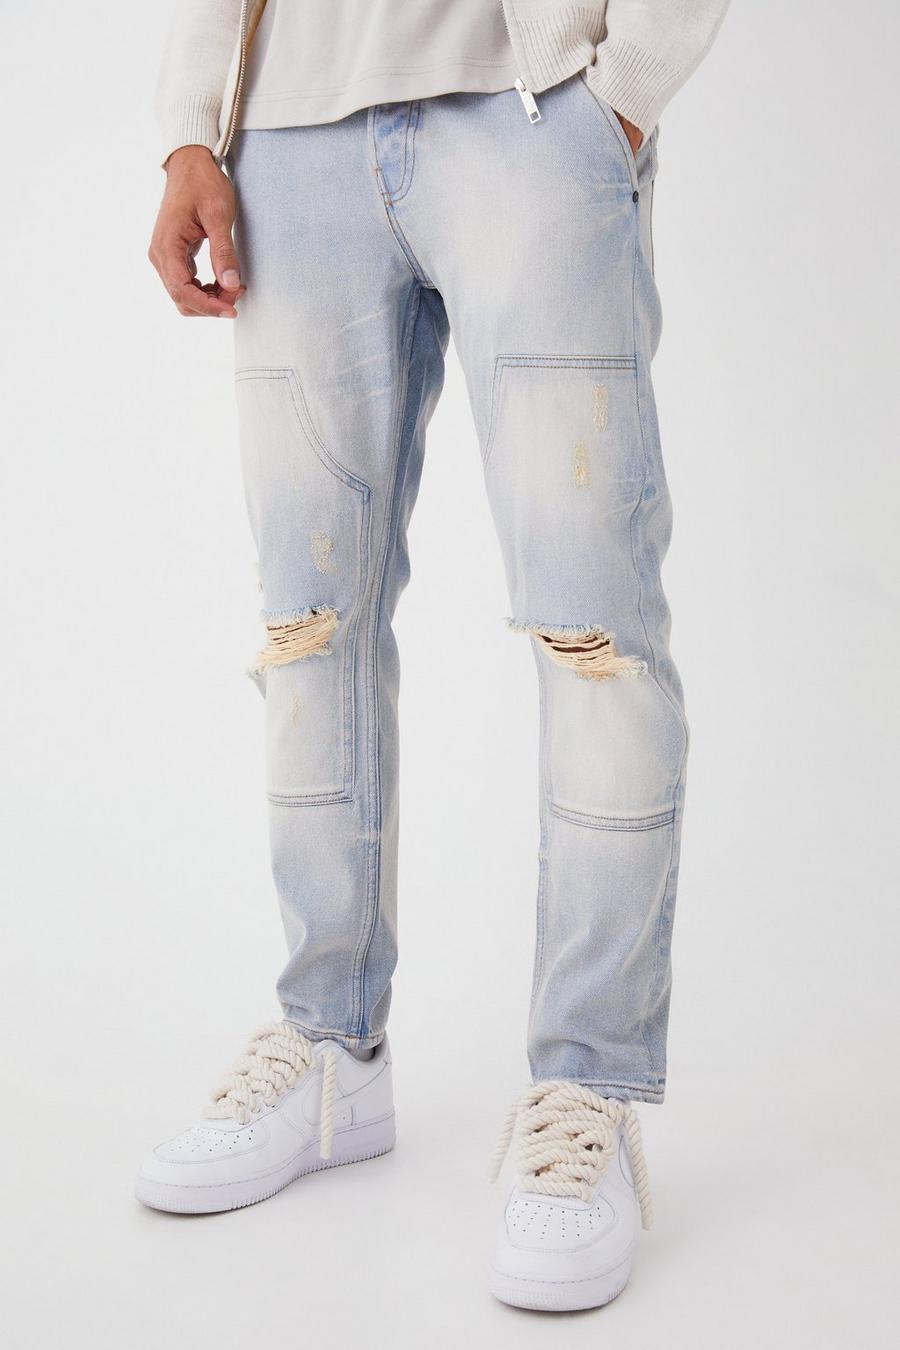 Jeans Slim Fit in denim rigido stile Carpenter con strappi, Antique blue